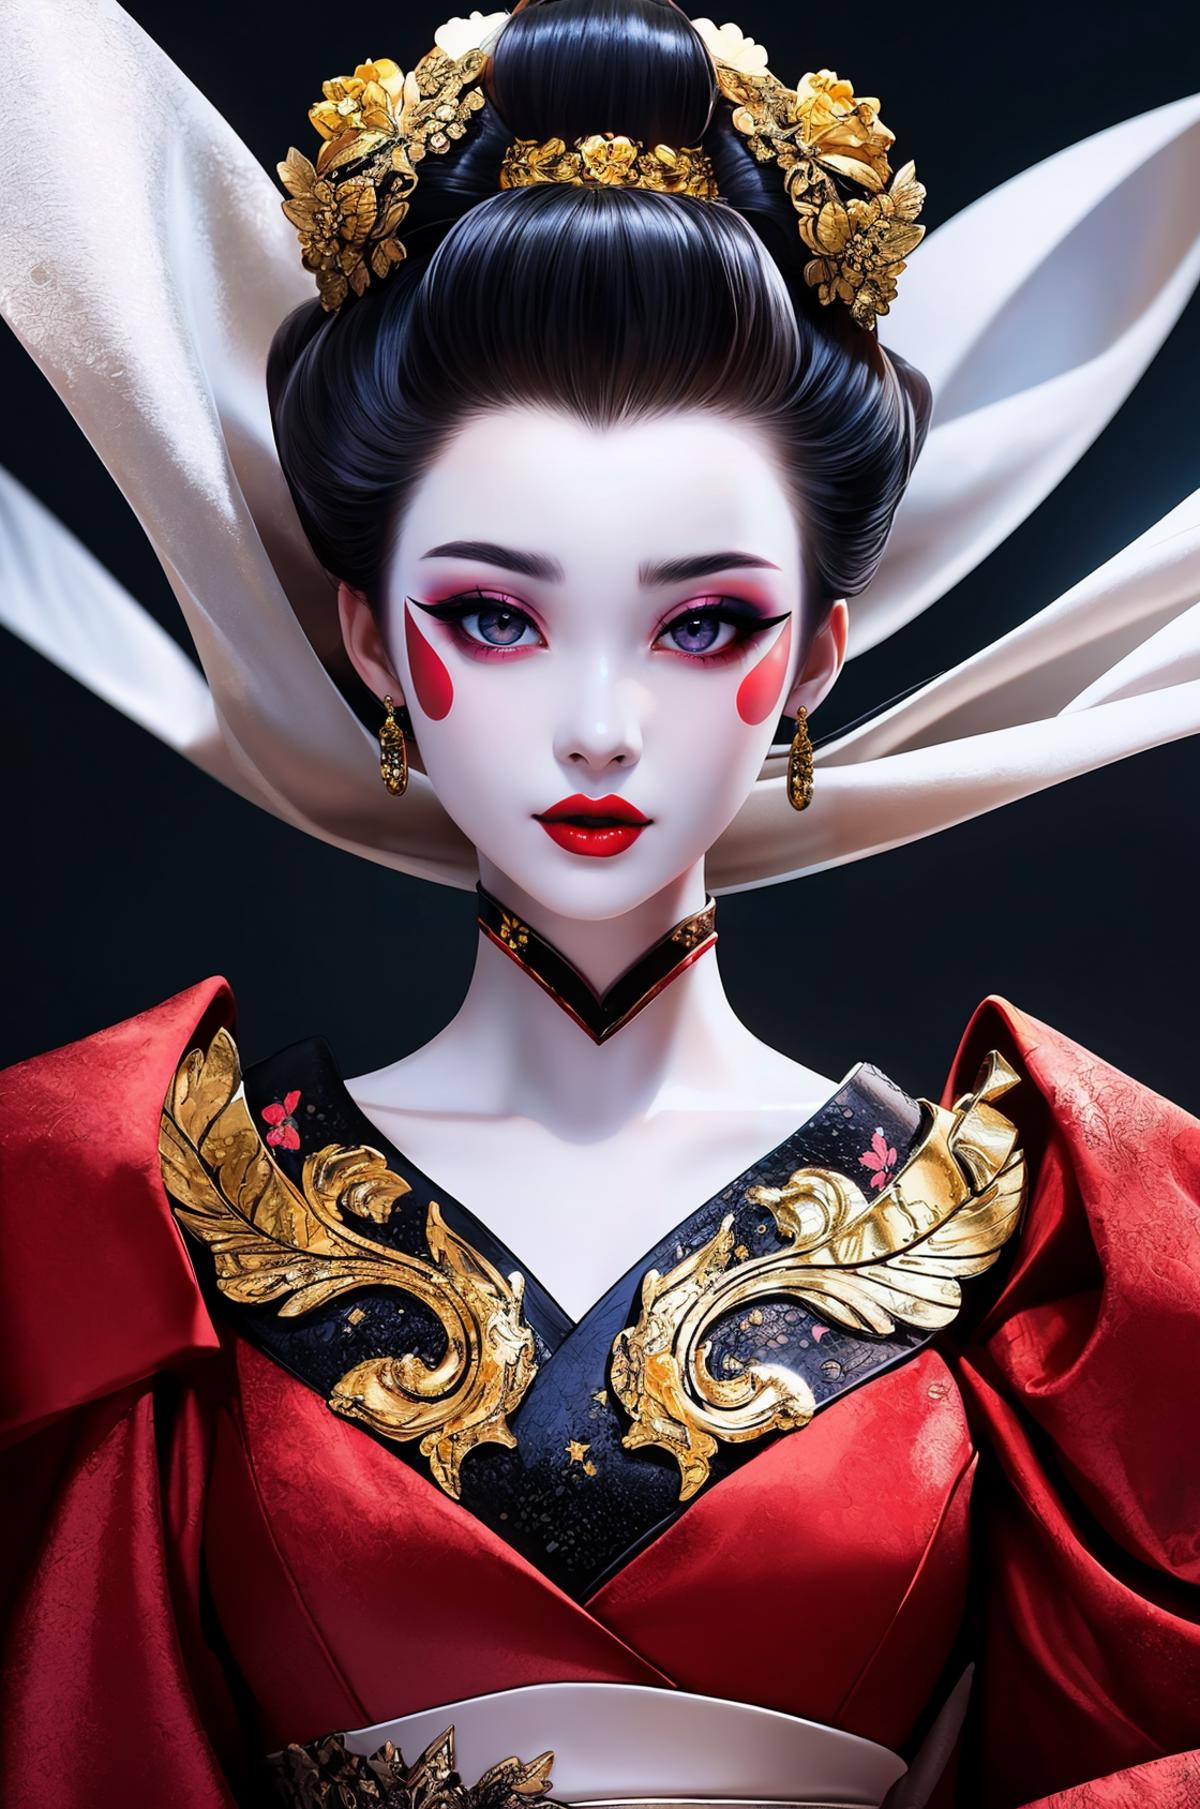 Geisha Makeup image by headupdef